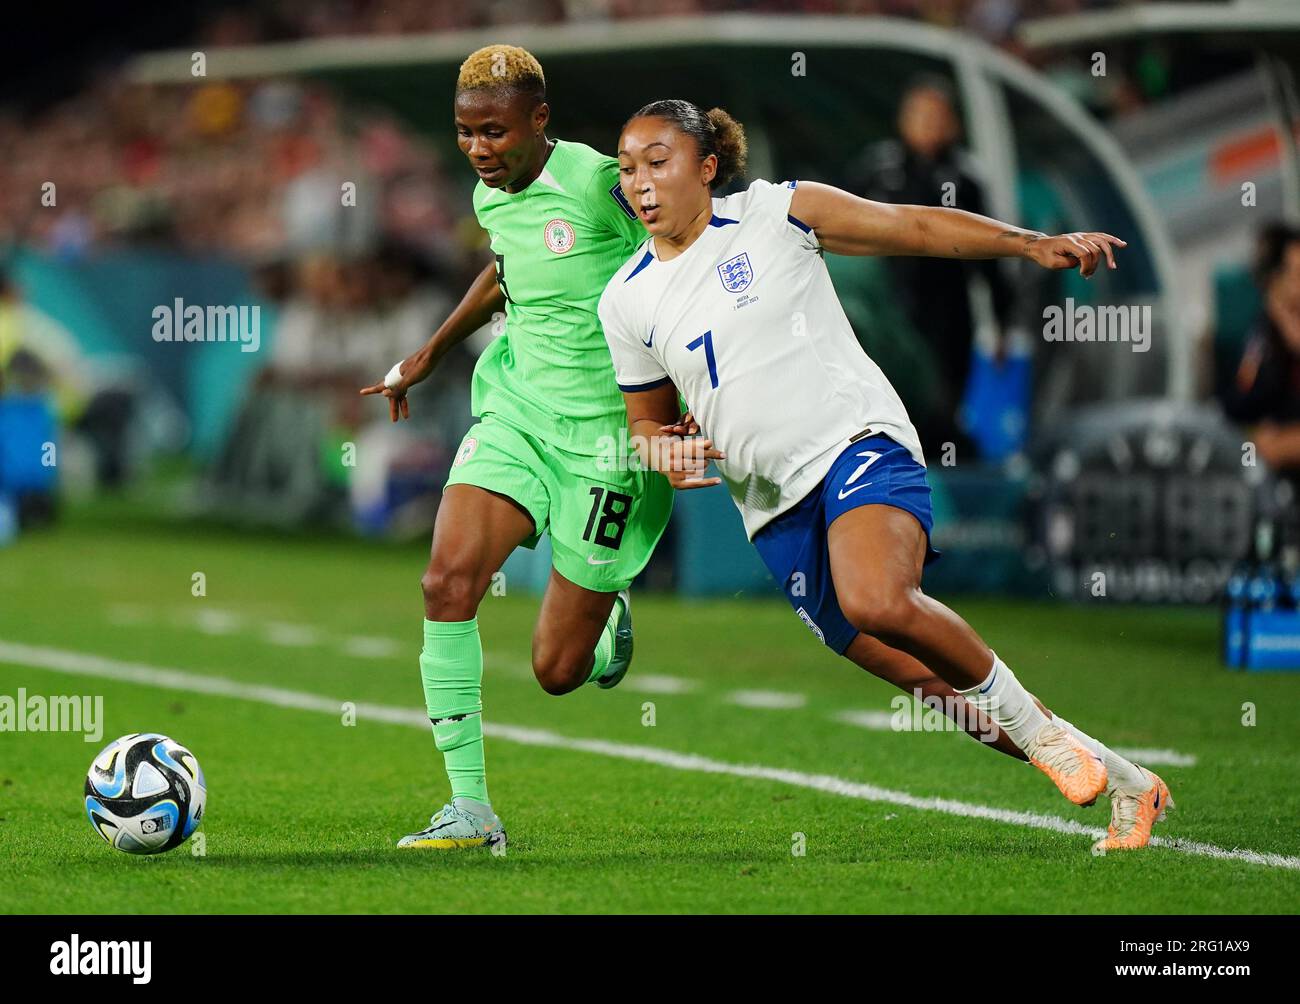 La Nigeria Halimatu Ayinde e l'Inghilterra Lauren James (a destra) si scontrano per la palla durante la Coppa del mondo femminile FIFA, Round of 16 match allo stadio di Brisbane, Australia. Data immagine: Lunedì 7 agosto 2023. Foto Stock